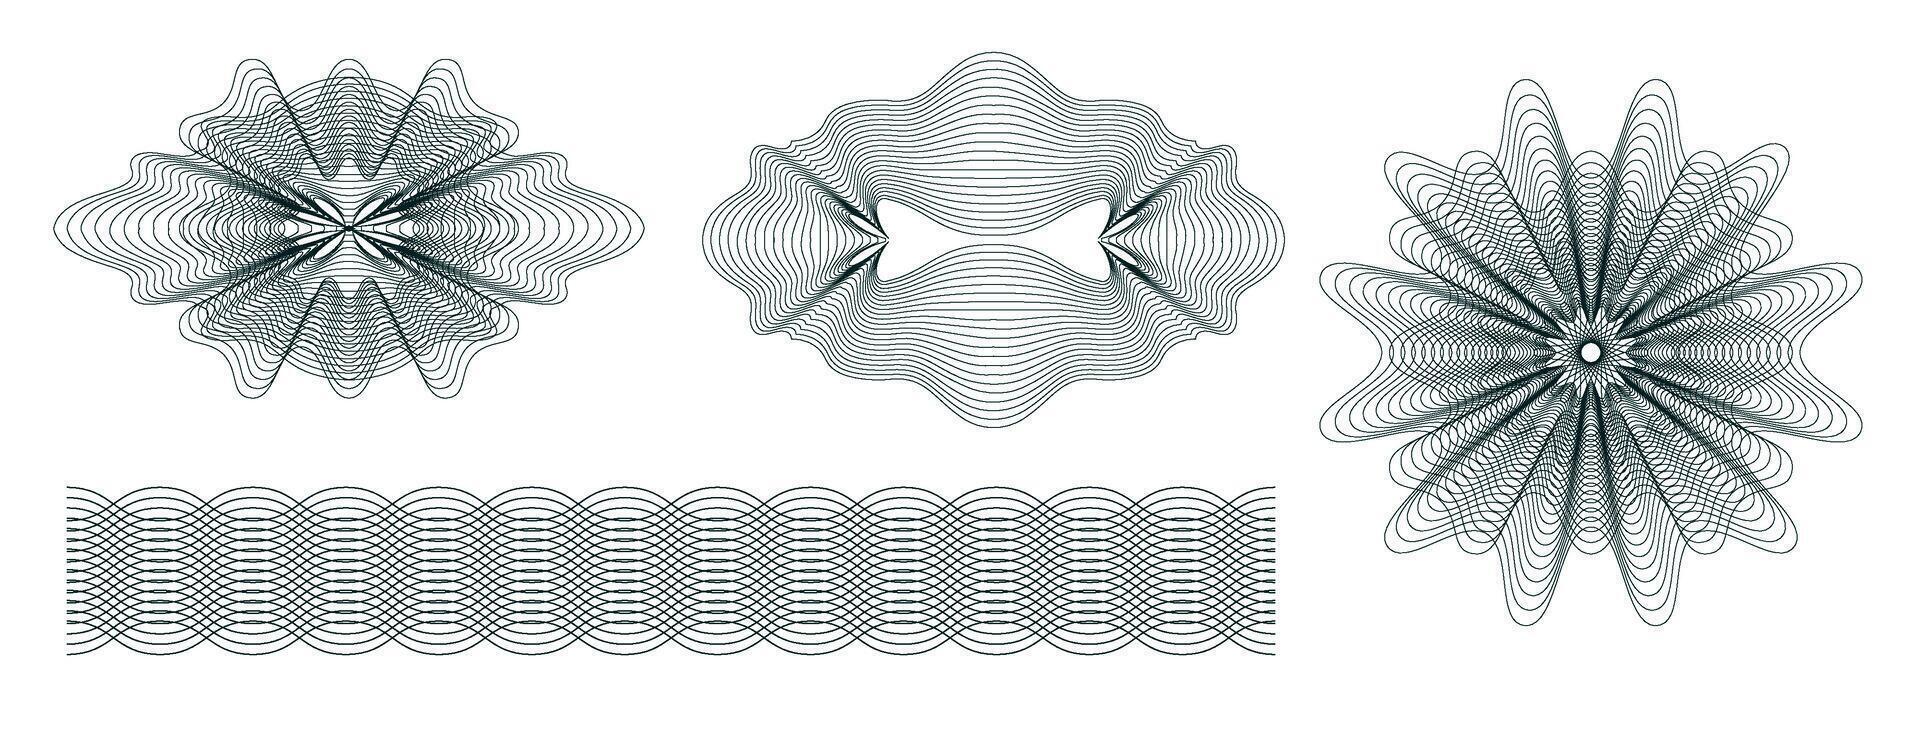 dinero filigrana. geométrico redondo, espiral y seguro guilloches. espirógrafo patrones y fronteras vector conjunto